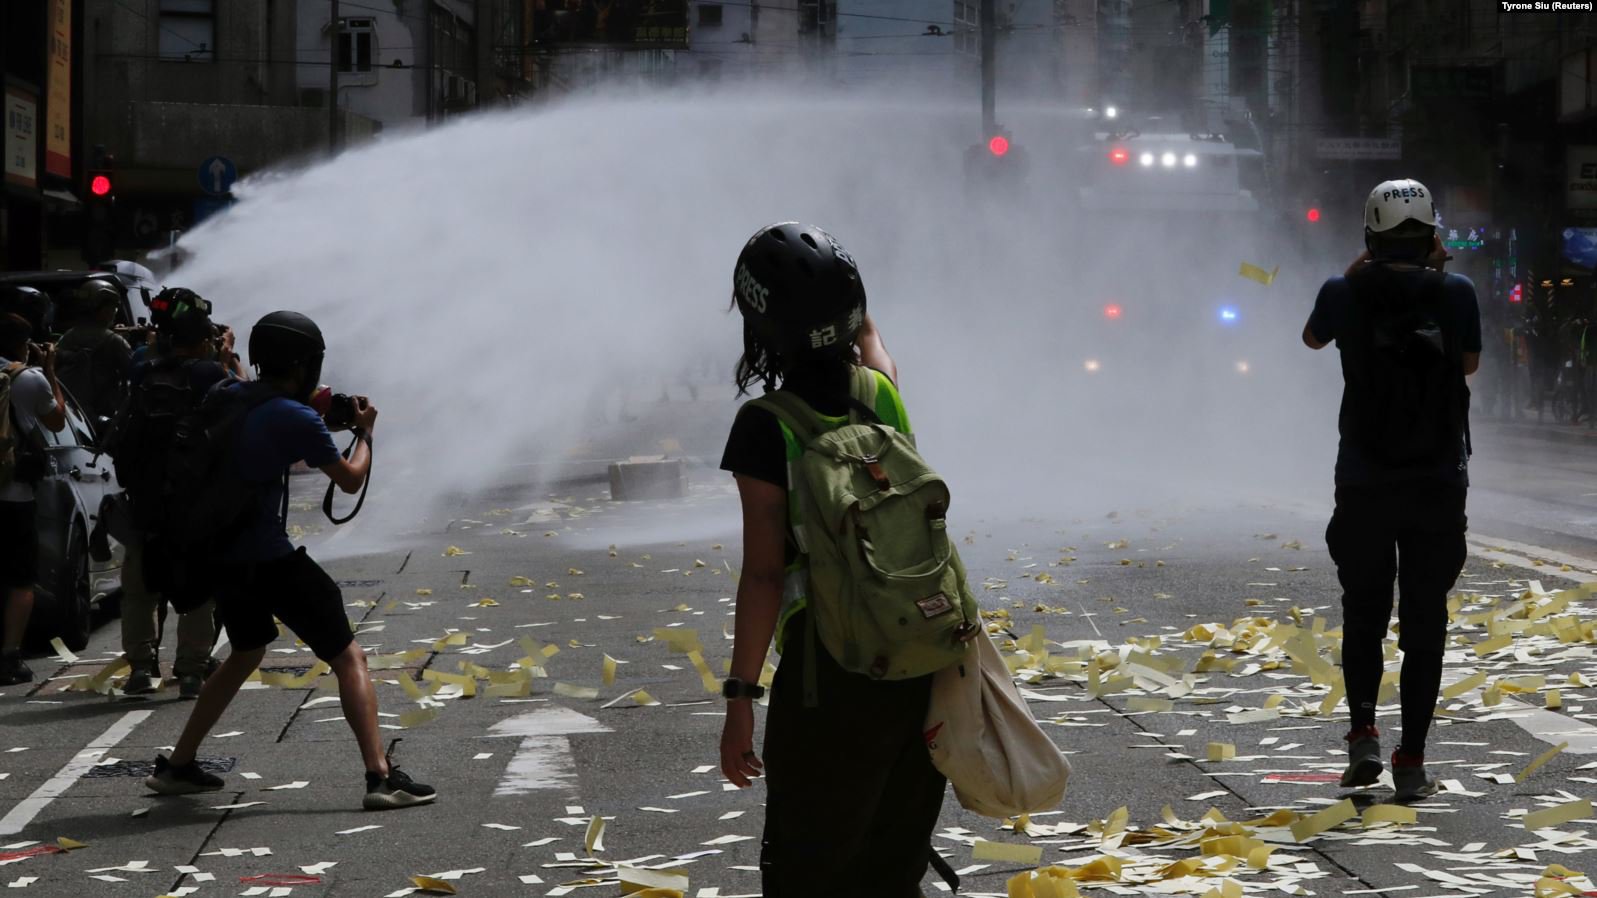 Поліція розганяє демонстрантів під час акції протесту в річницю передачі Гонконгу Британією Китаю. Гонконг, 1 липня 2019 року: фото Reuters